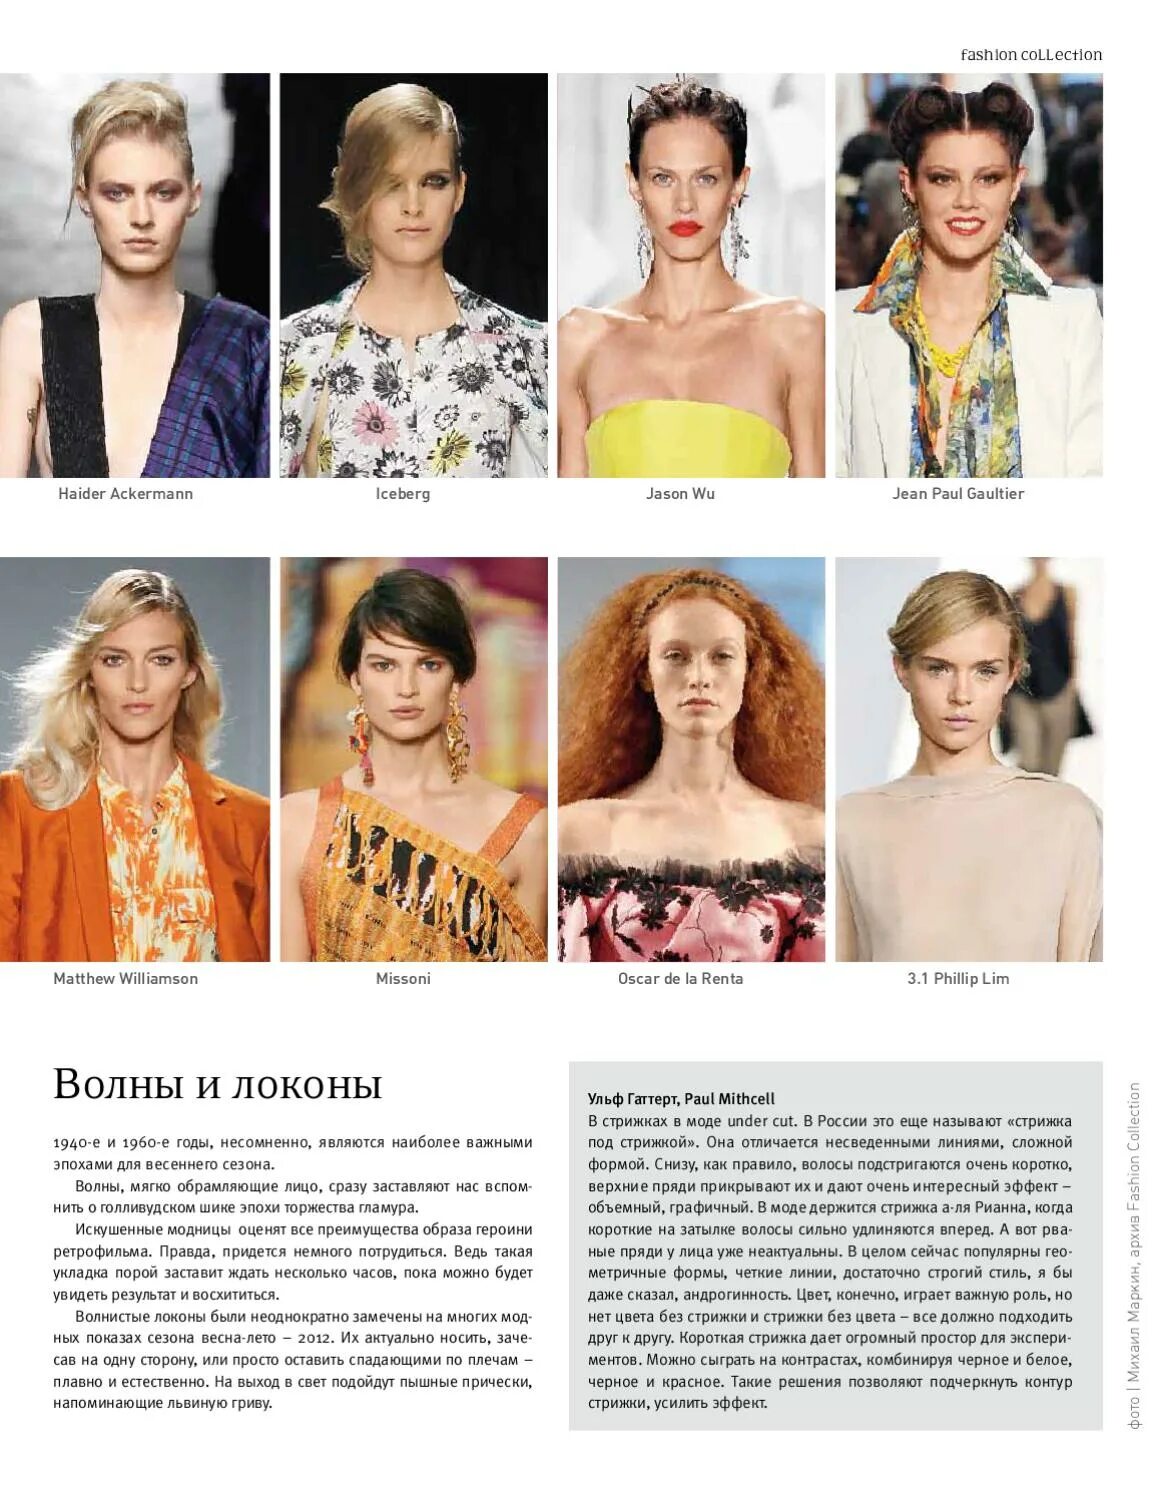 Волосы в России мода. Collections page